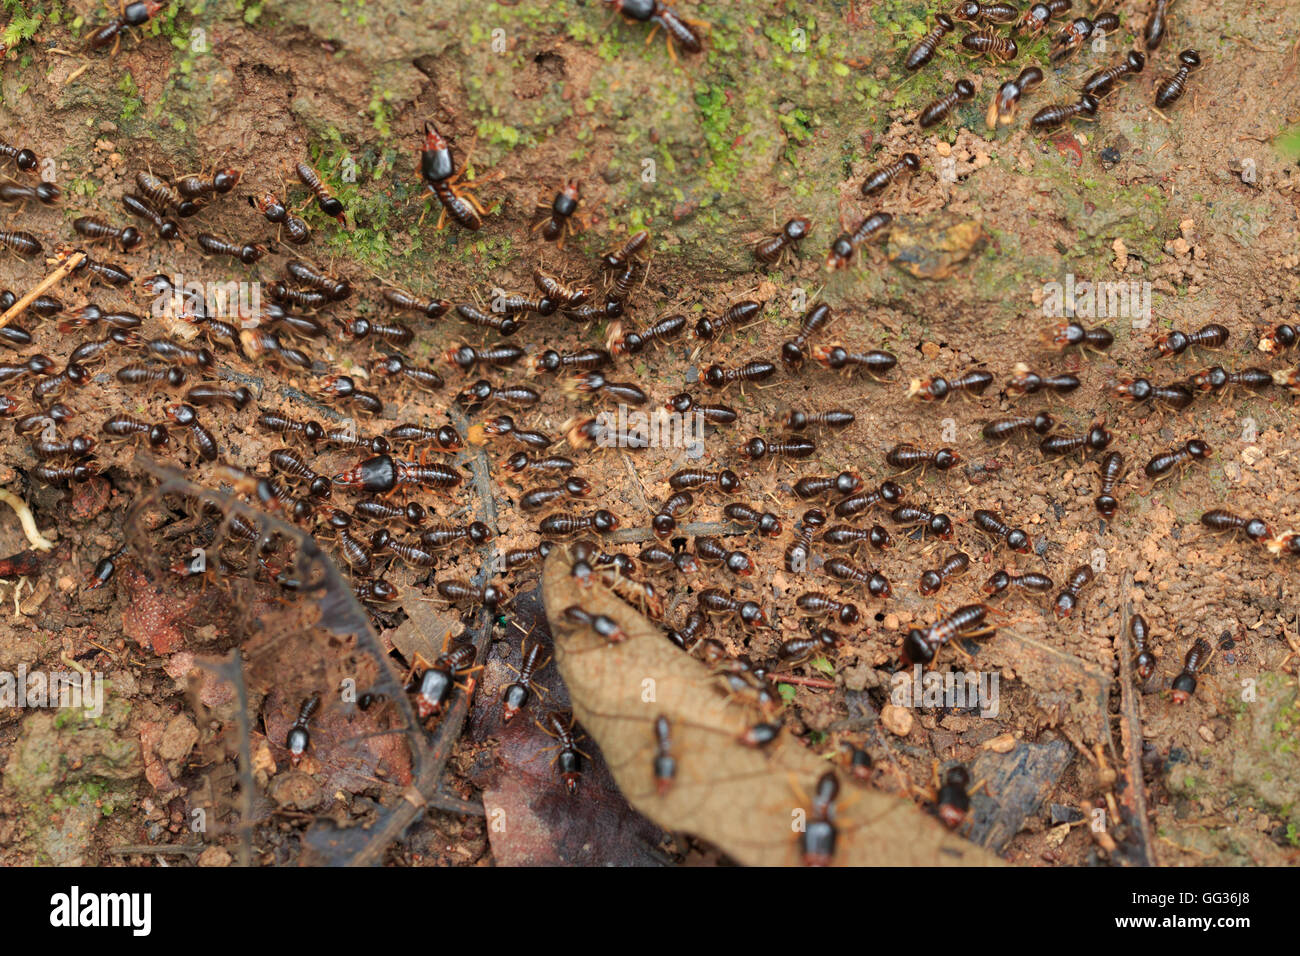 Motion de termites travailleur sur le sol de la forêt dans la région de Saraburi Thaïlande. Shallow DOF Banque D'Images